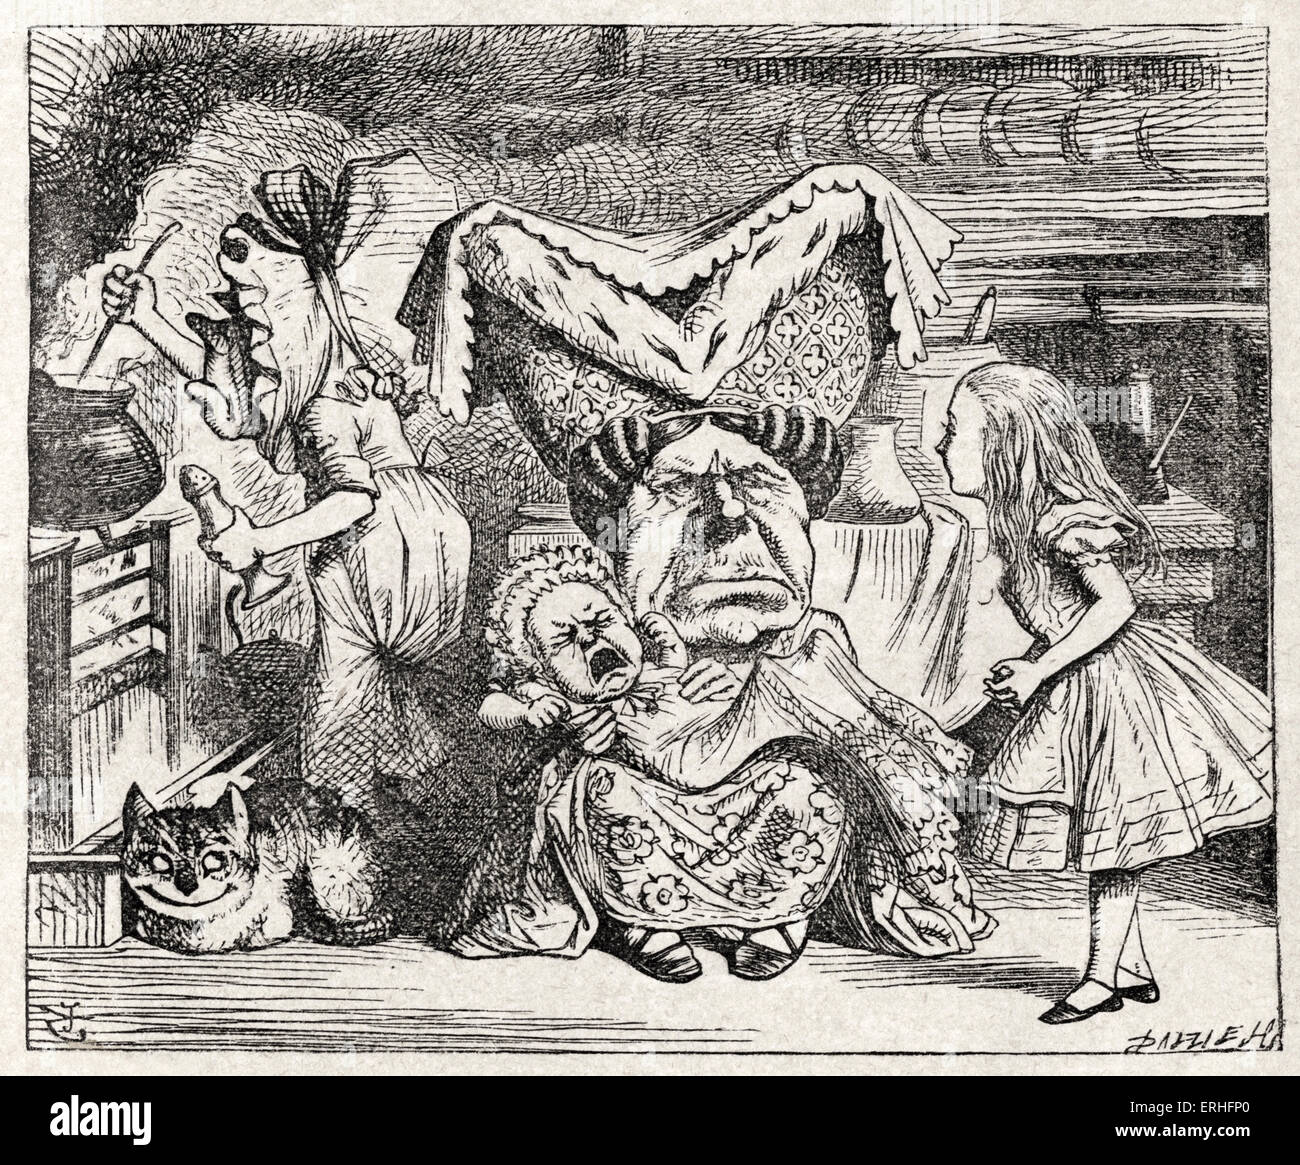 La Duchesse l'Allaitement d'un enfant, d'Alice au Pays des merveilles de Lewis Carroll (Charles Lutwidge Dodgson), anglais et auteur de livres pour enfants Banque D'Images